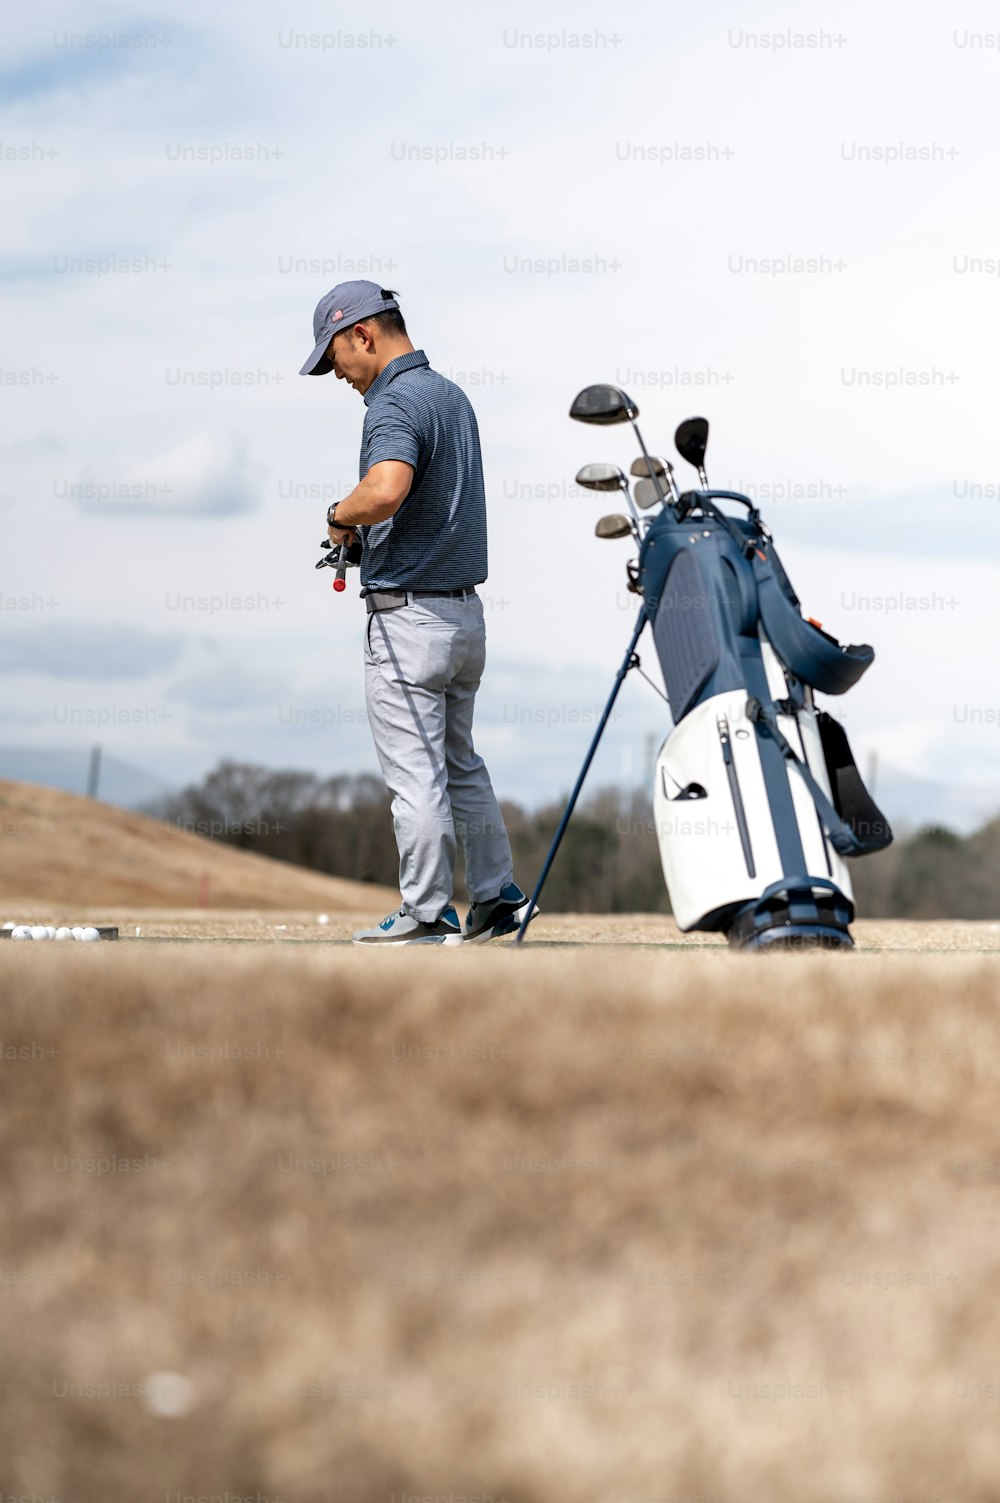 Un uomo in piedi accanto a una sacca da golf